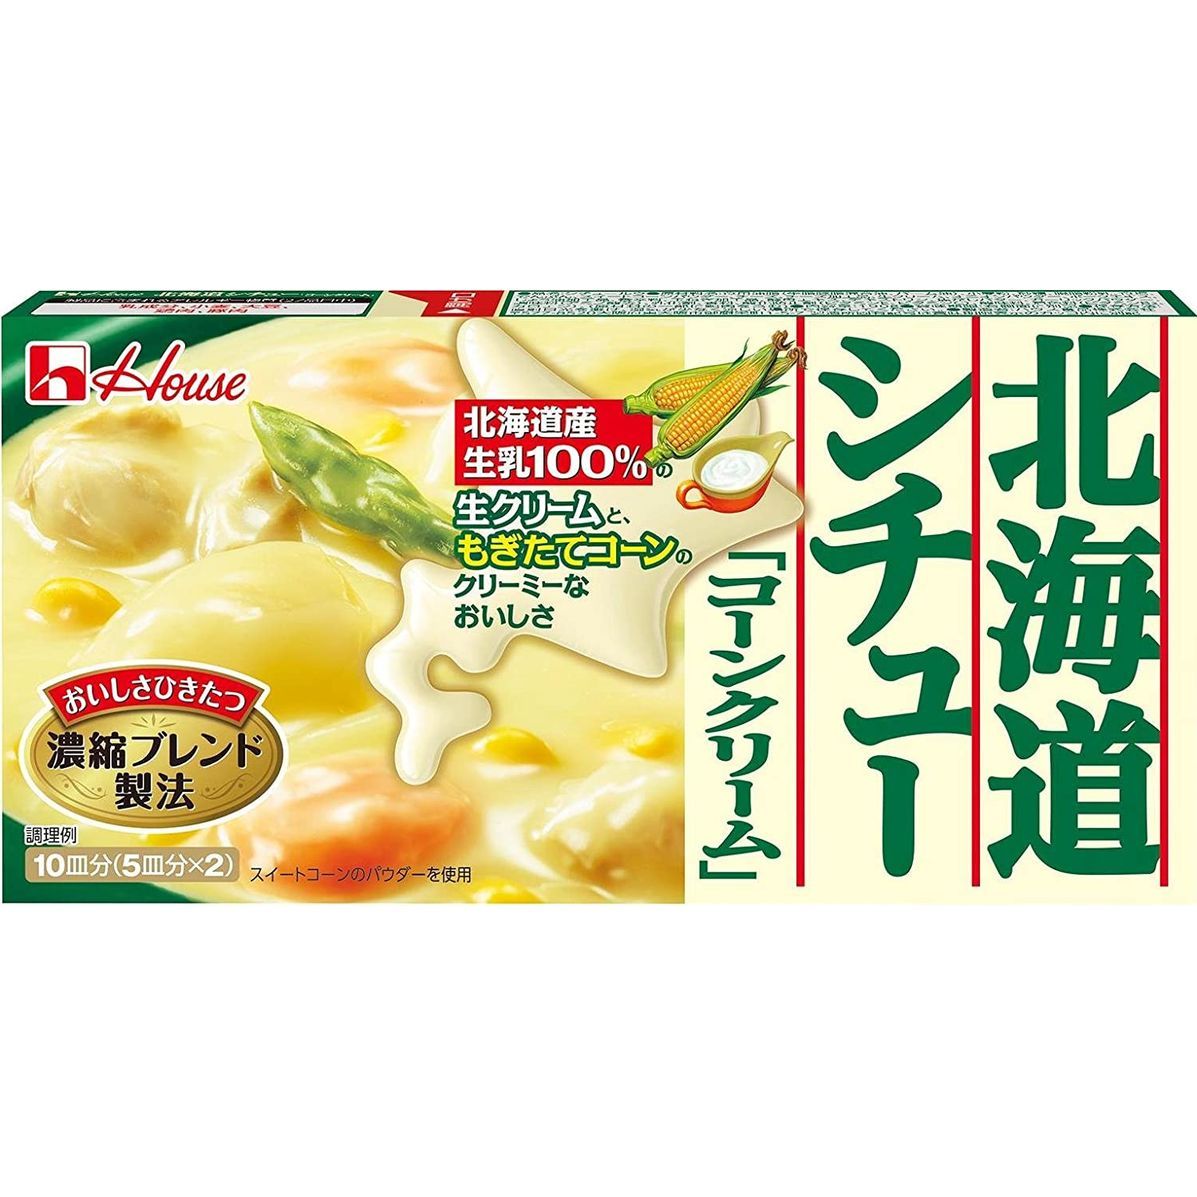 ハウス食品 北海道シチュー コーンクリーム 180g×1個の商品画像